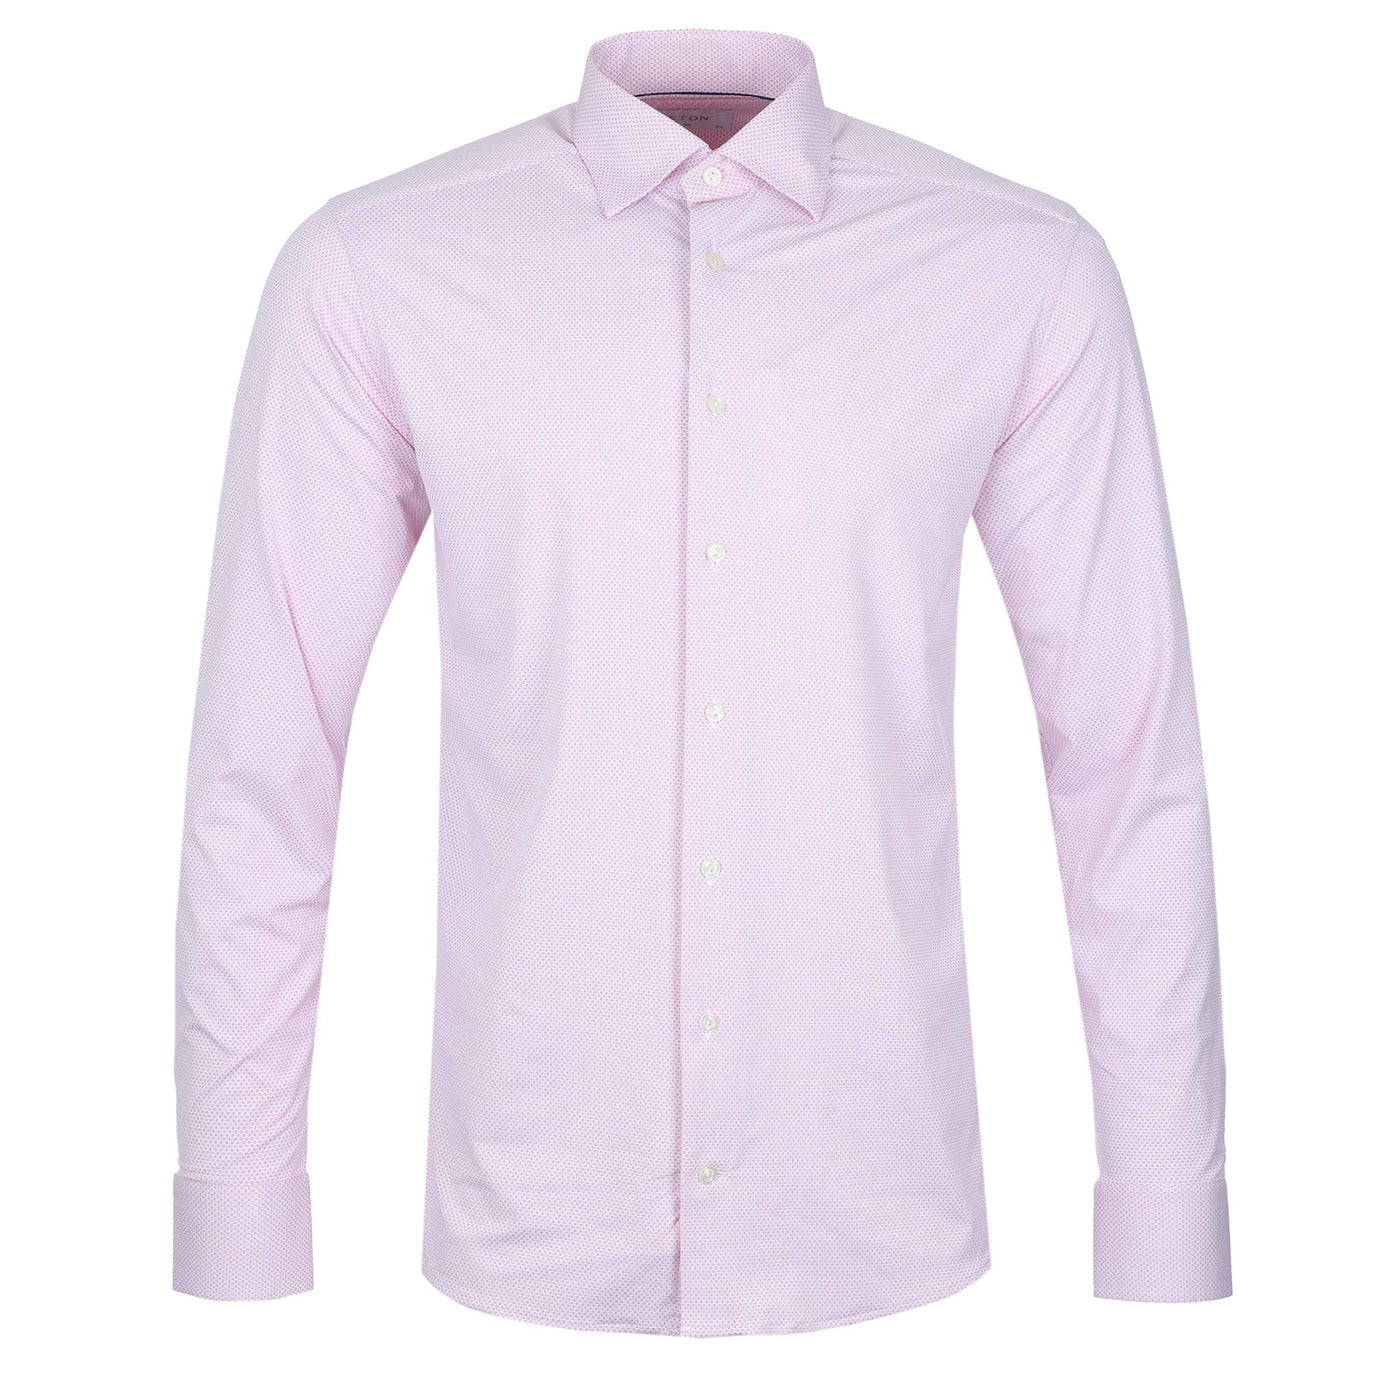 Eton 4 Way Stretch Shirt in Pink